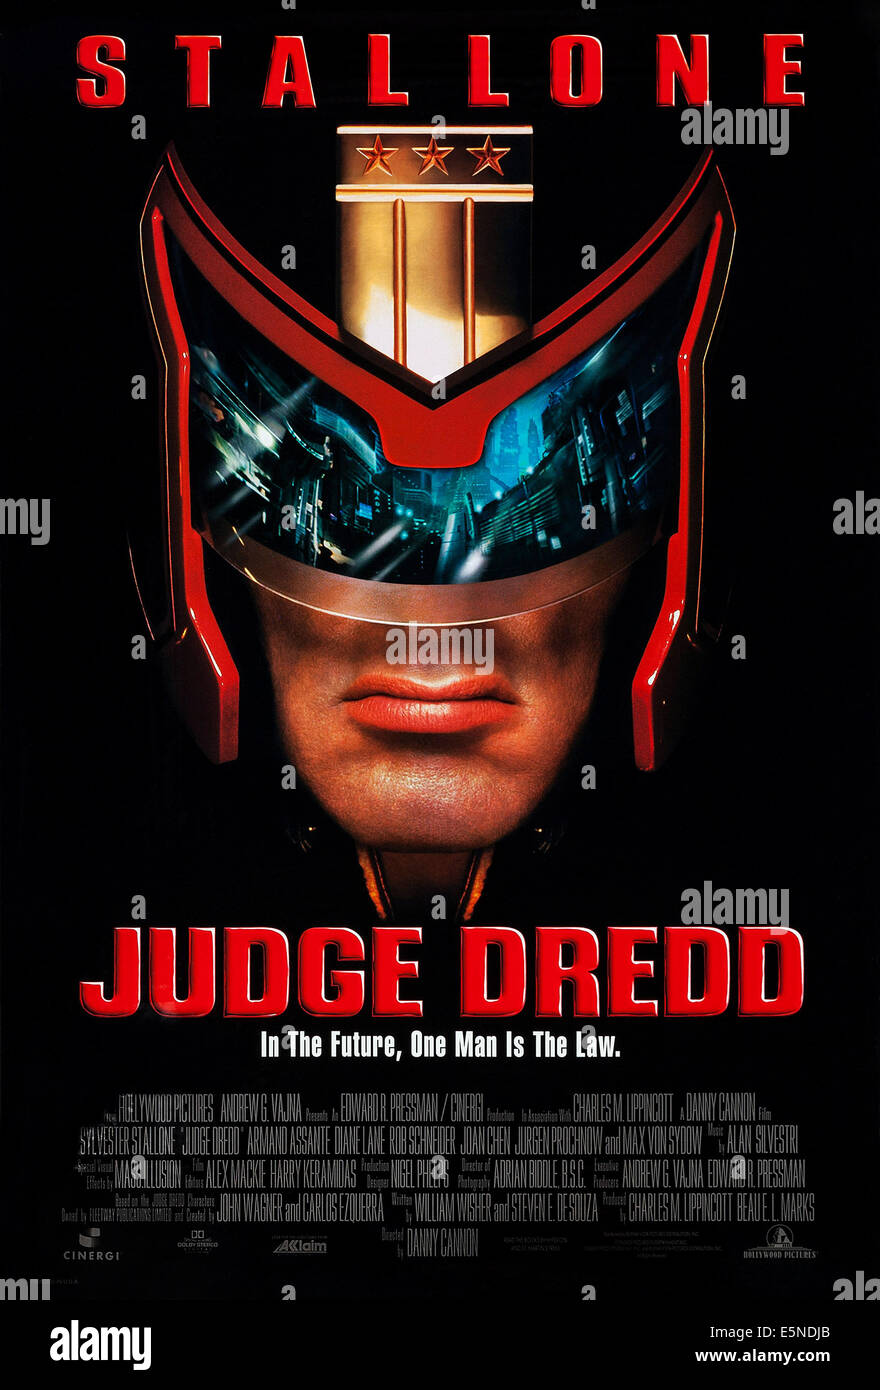 JUDGE DREDD, U.S. locandina, Sylvester Stallone, 1995. © Buena  Vista/cortesia Everett Collection Foto stock - Alamy